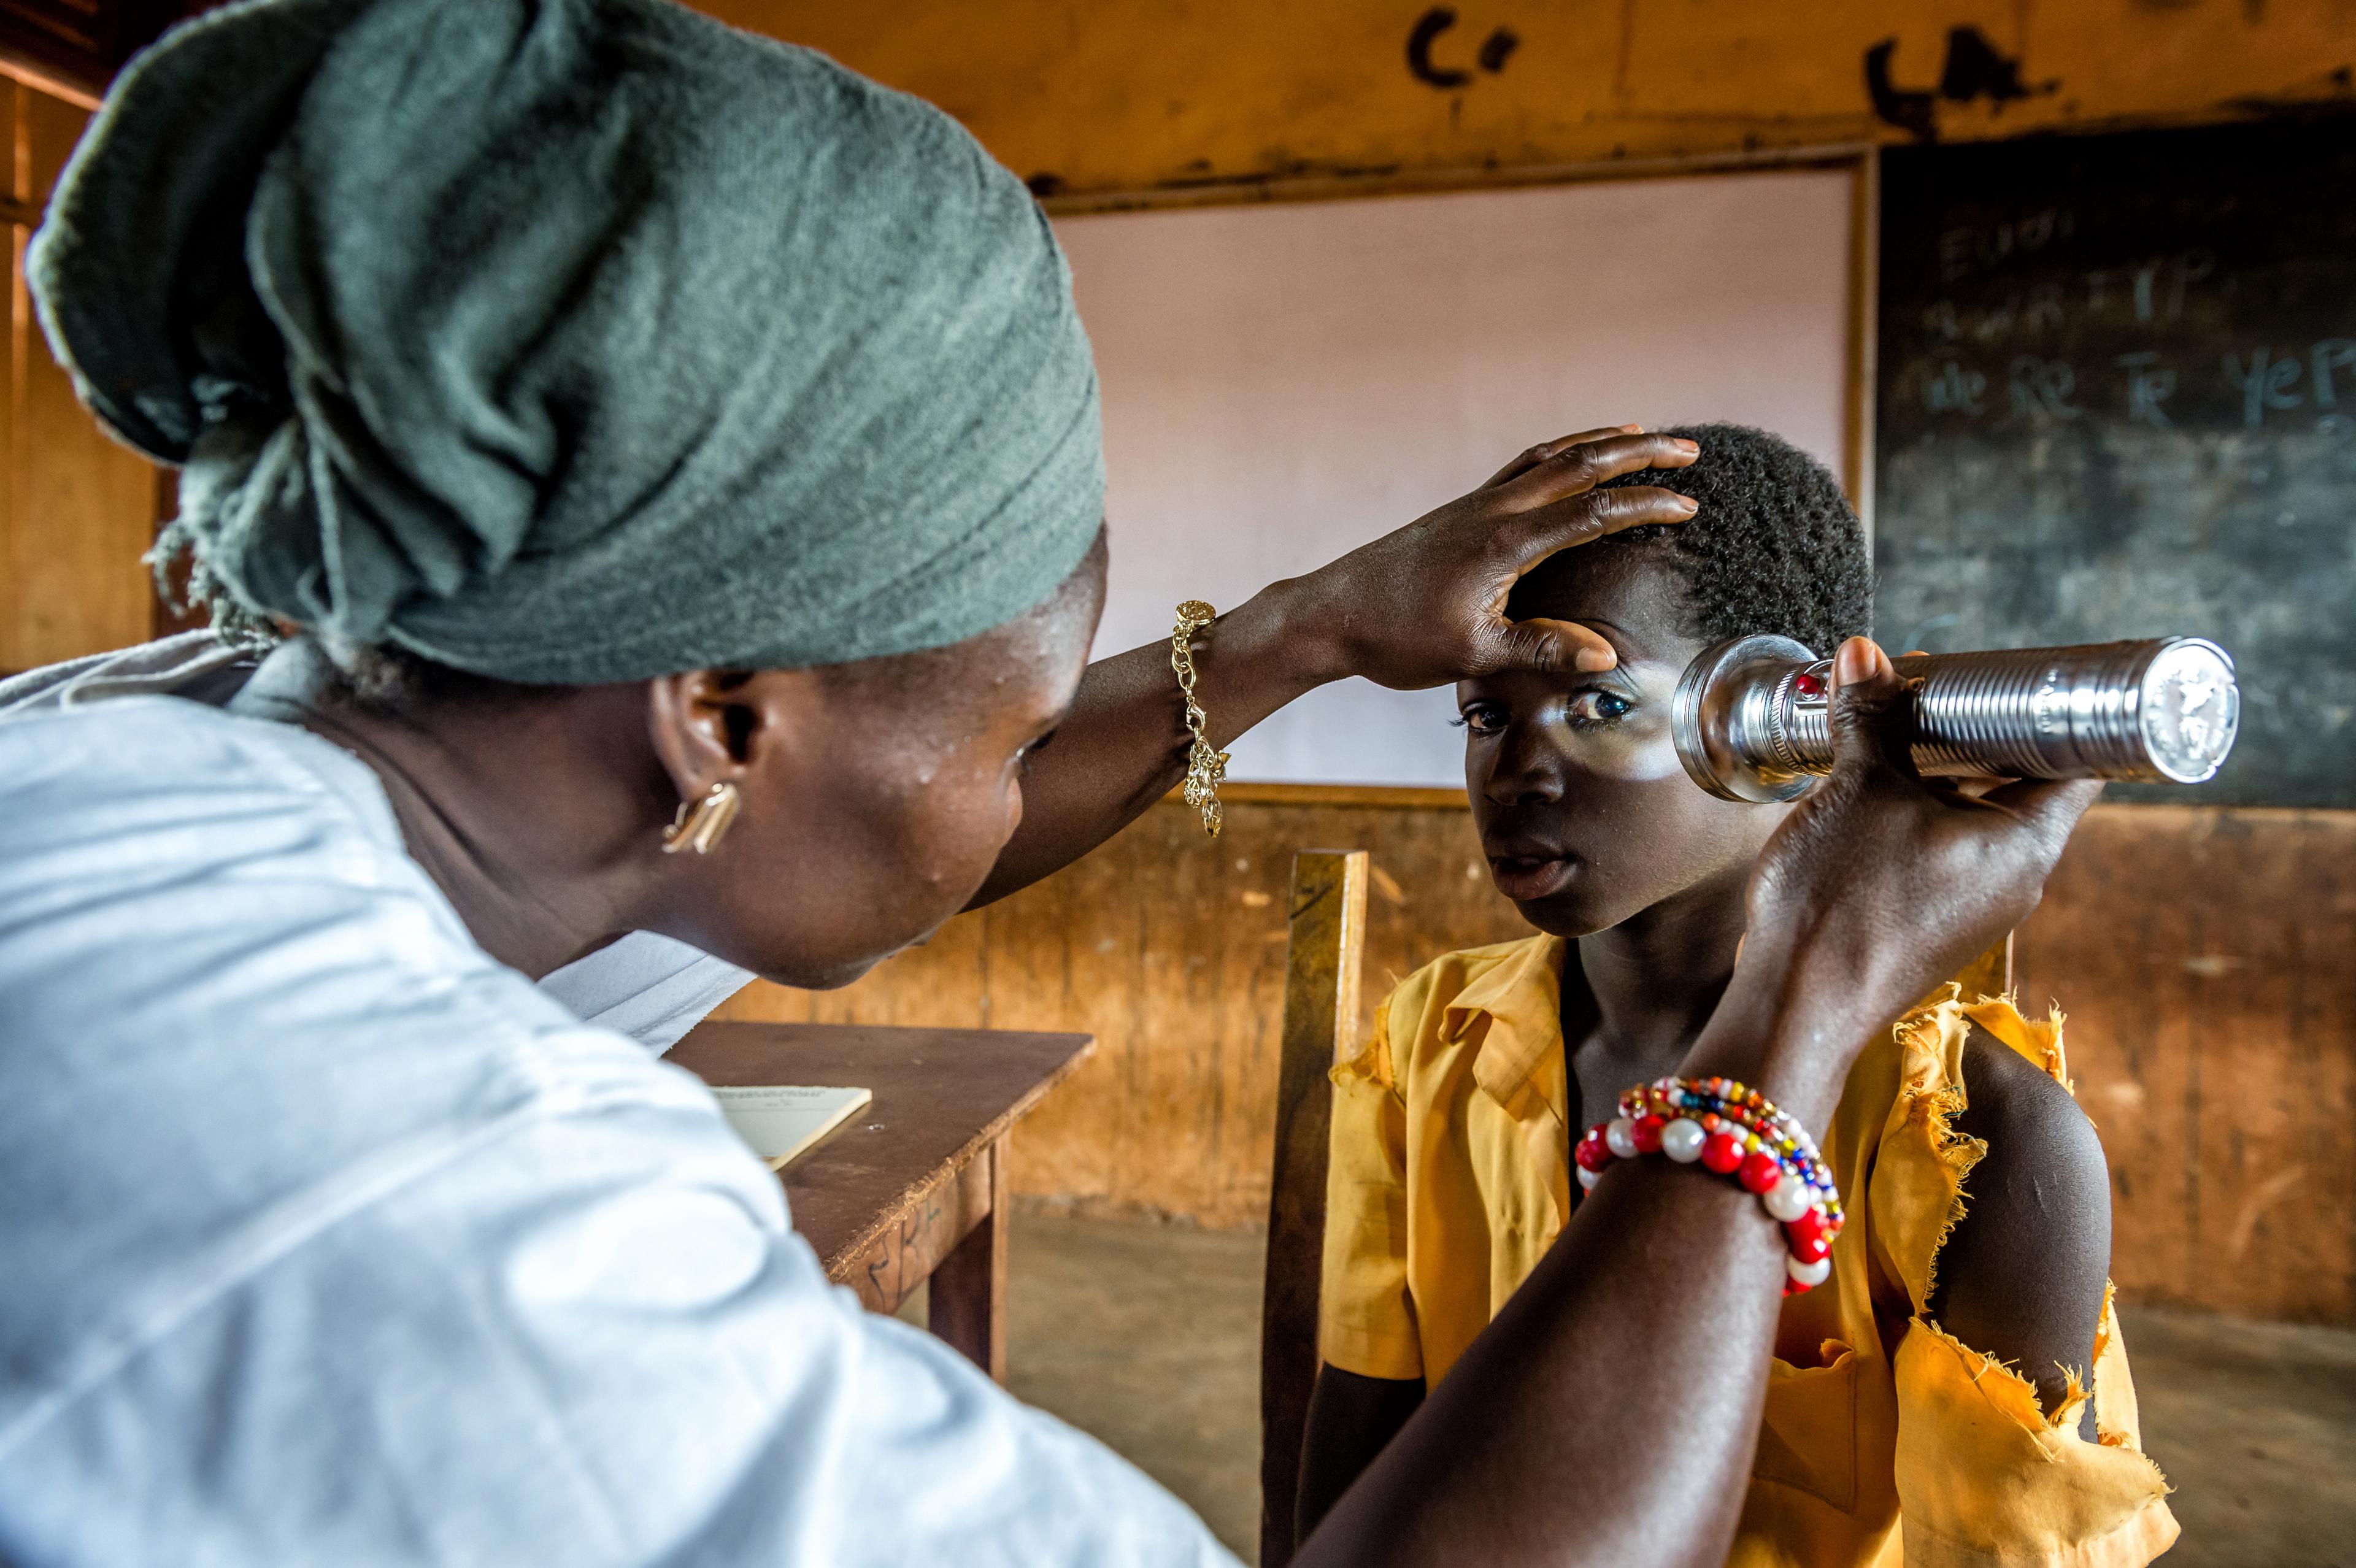 Ragazza sottoposta a un test oculistico in una scuola vicino a Tamale. Un medico esamina il suo occhio sinistro con una torcia.